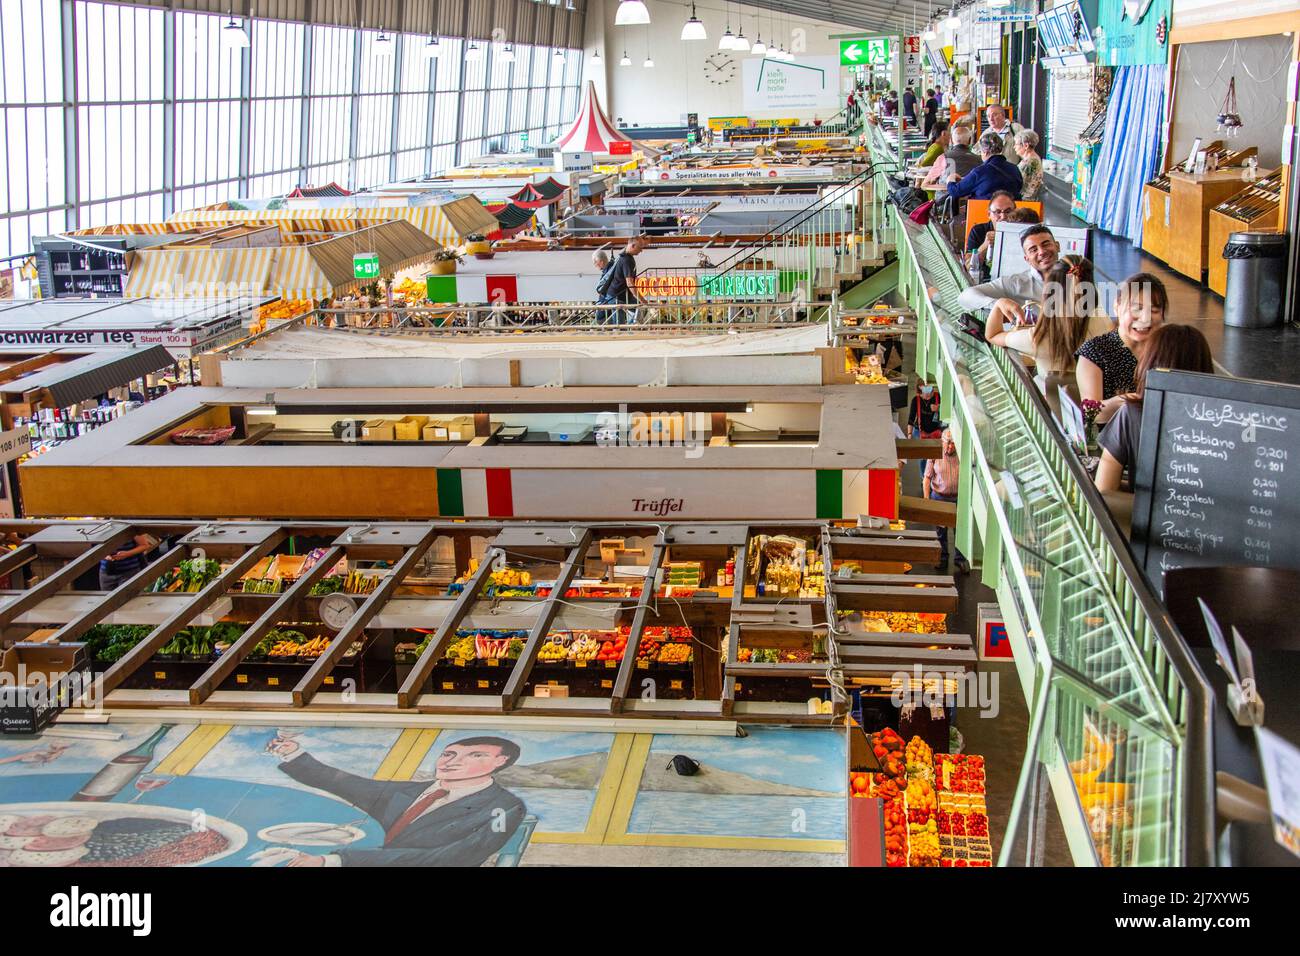 Kleinmarkthalle, mercato interno, Francoforte, Germania Foto Stock